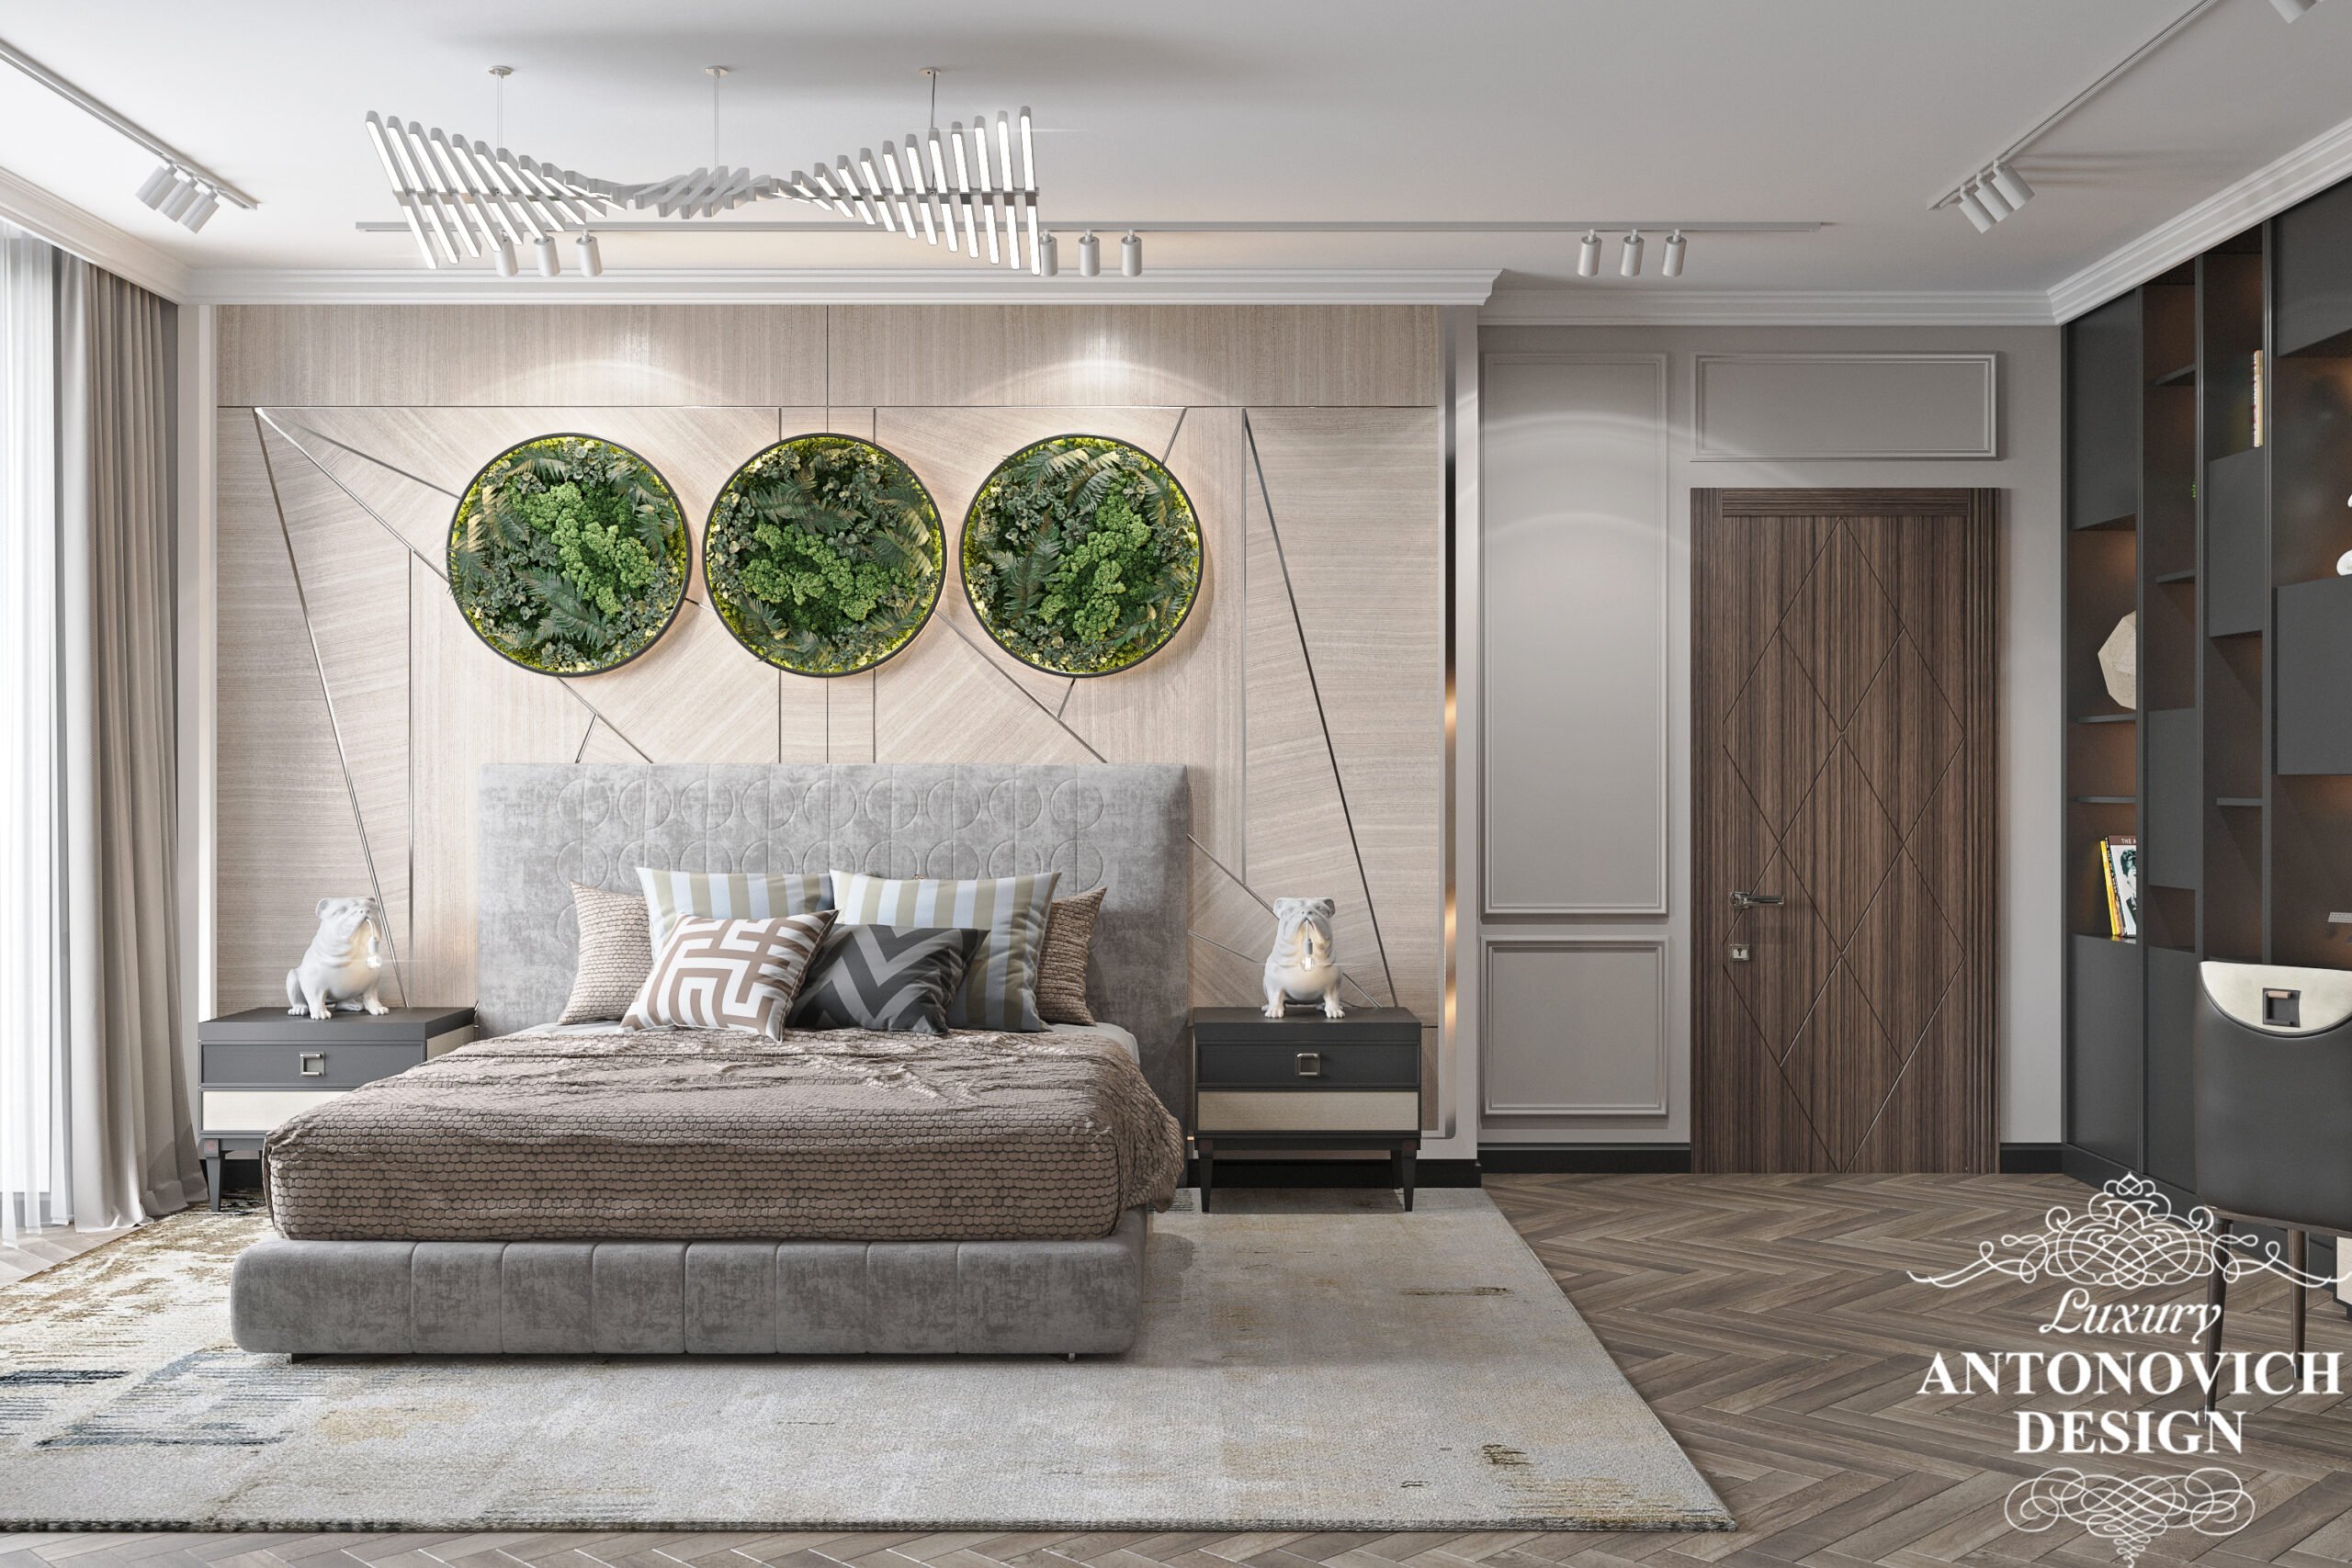 Оригинальный декор из живых растений над изголовьем кровати в проекте стильной спальни в проекте дома